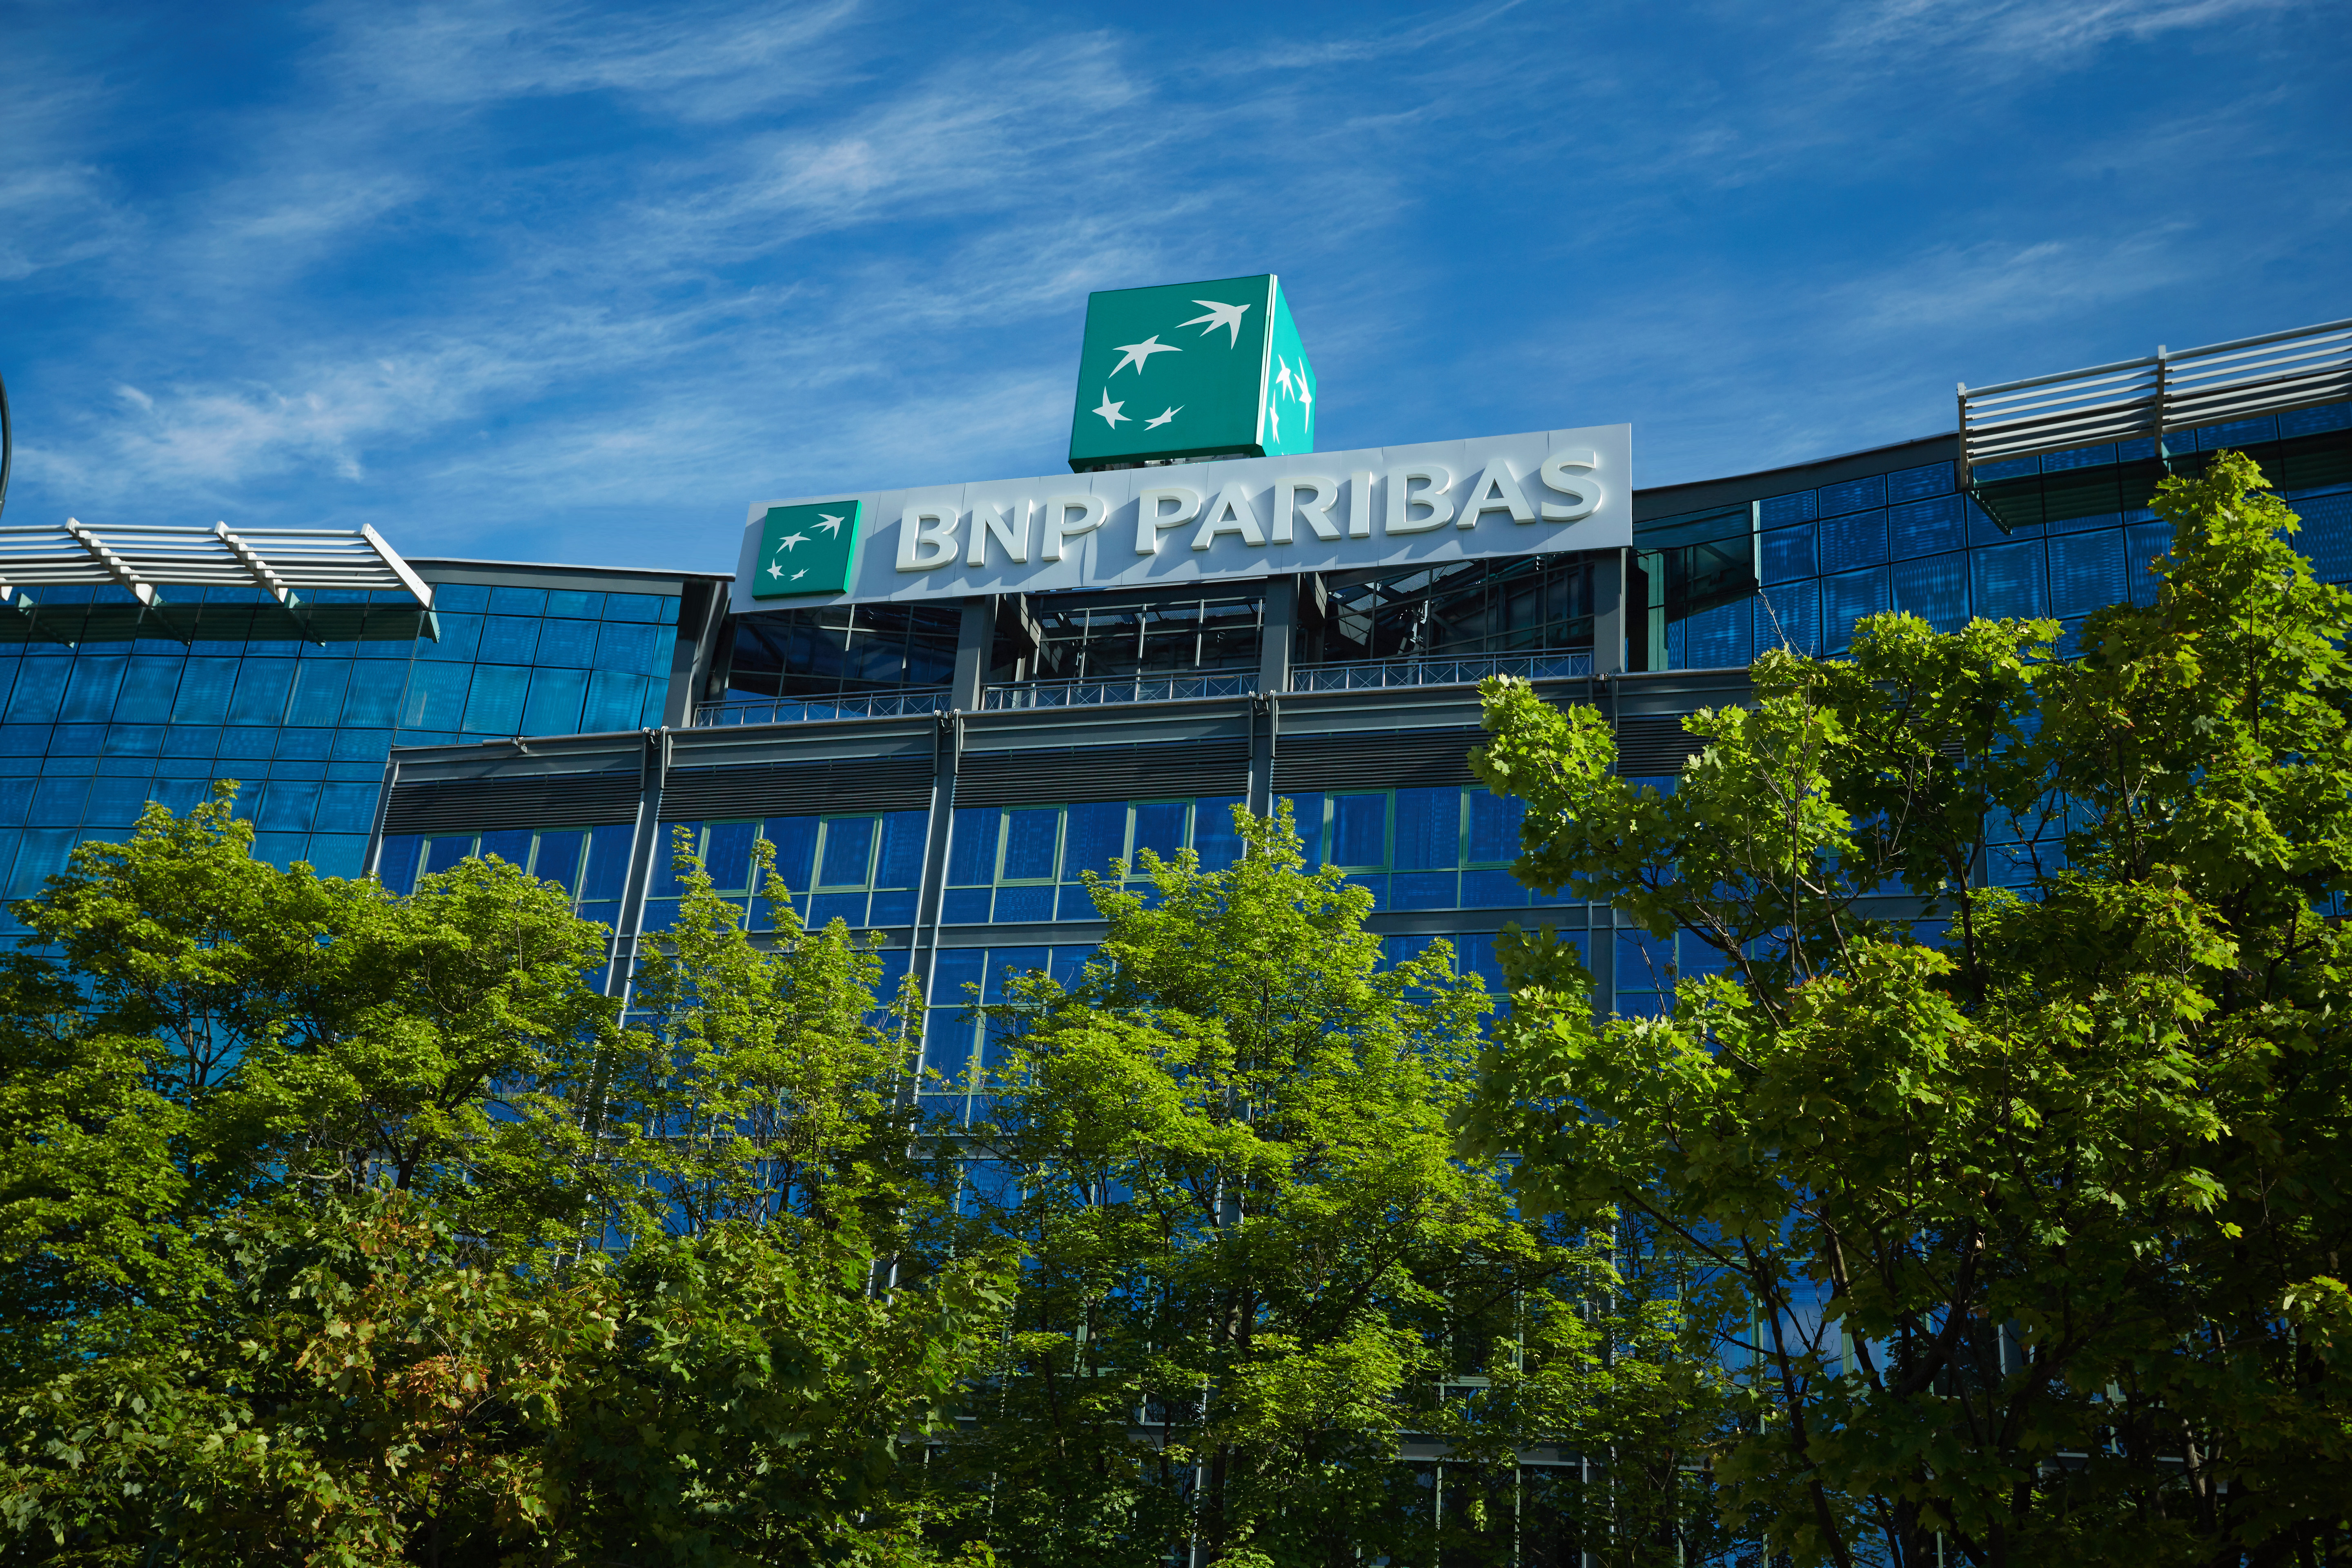 BNP Paribas - 300 tys. złotych od Banku BNP Paribas dla lokalnych organizacji pozarządowych w całej Polsce